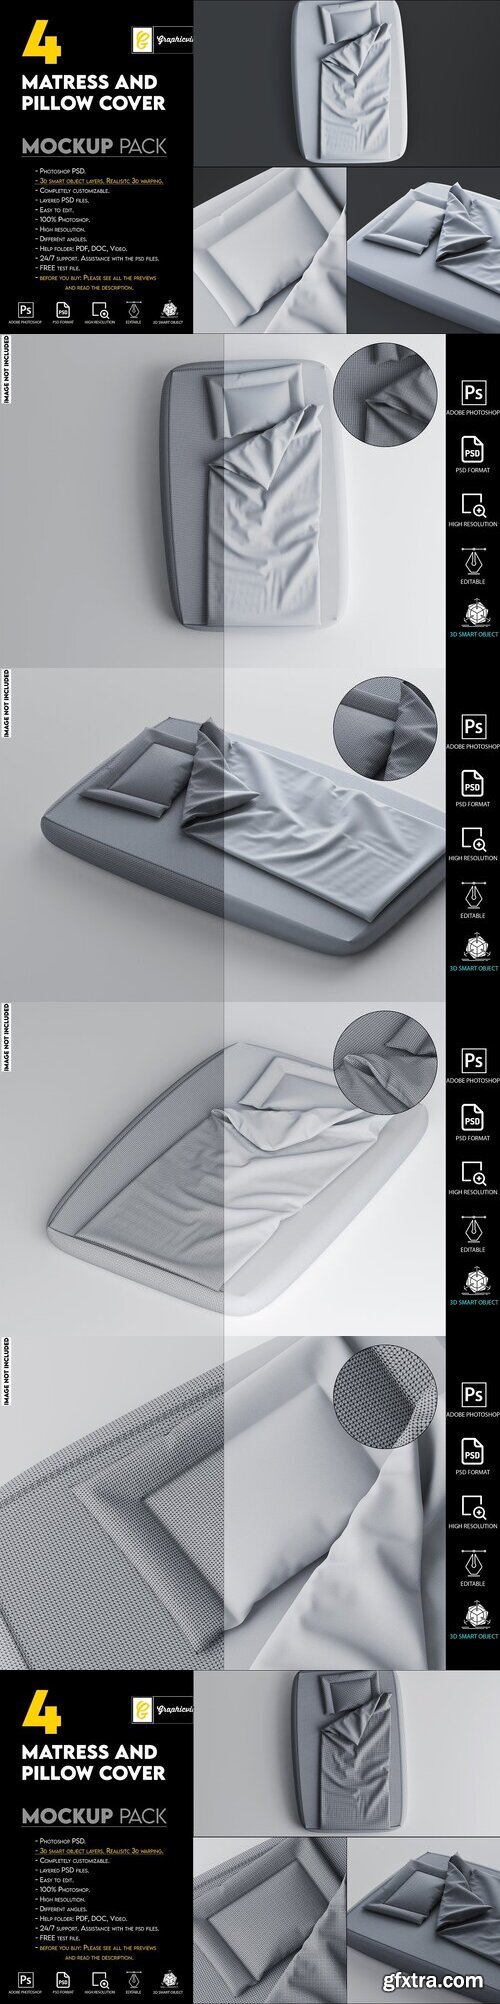 Creativemarket - Matres and pillow cover mockup 7465990